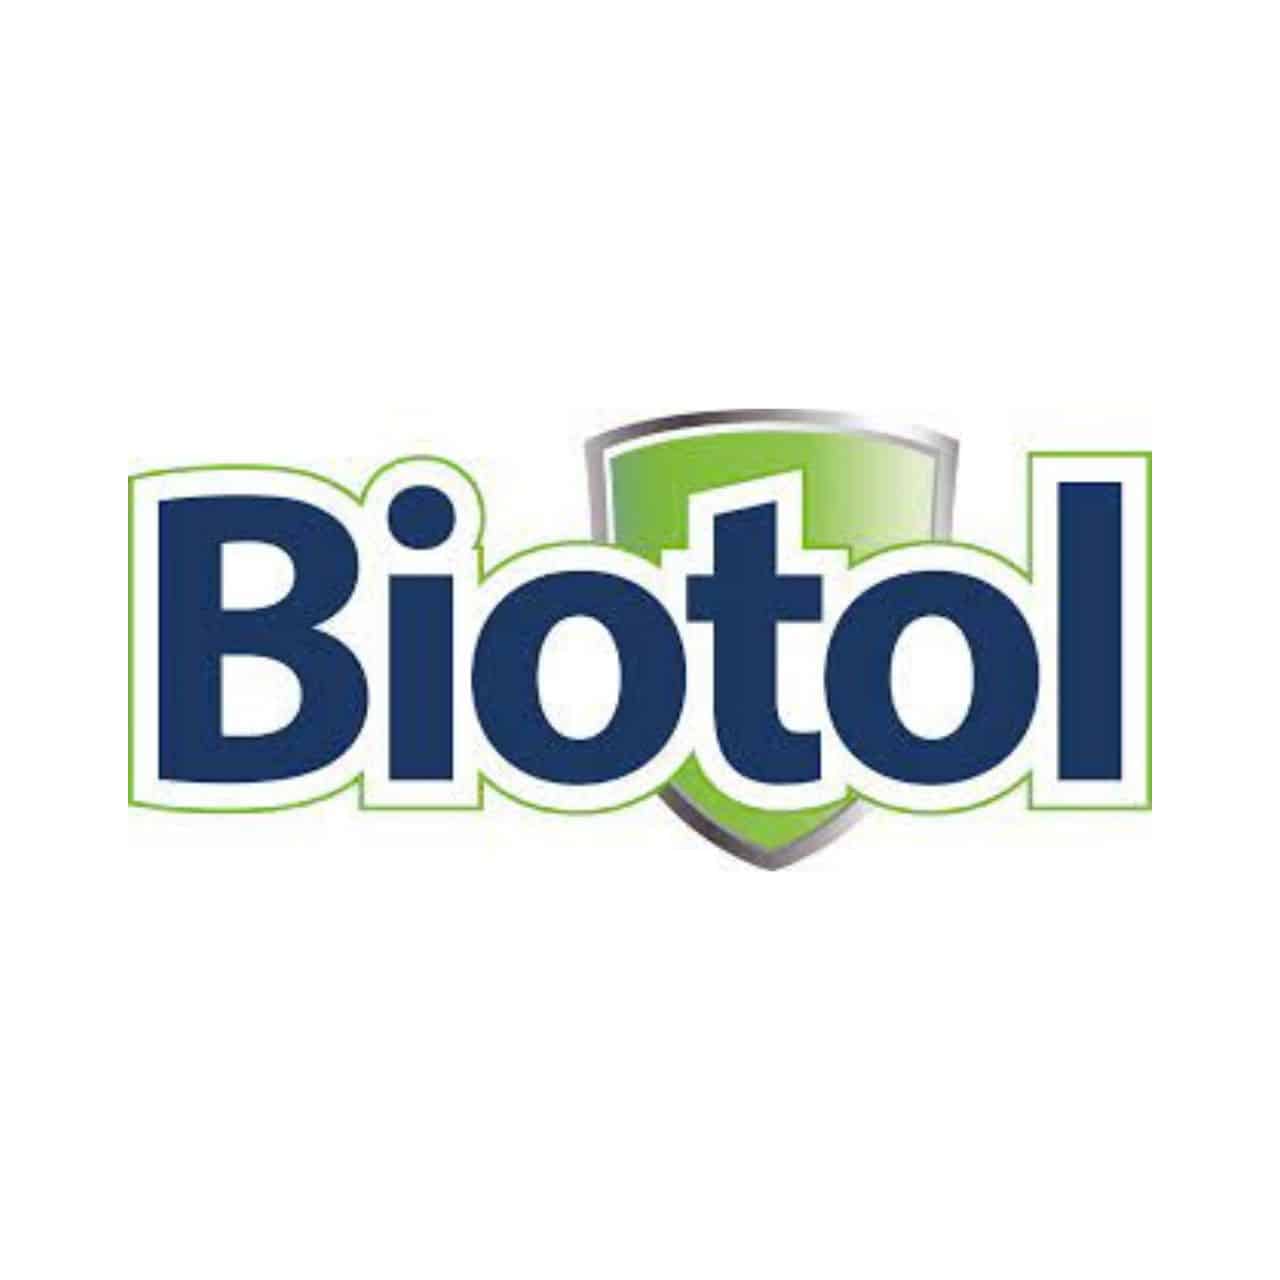 biotol